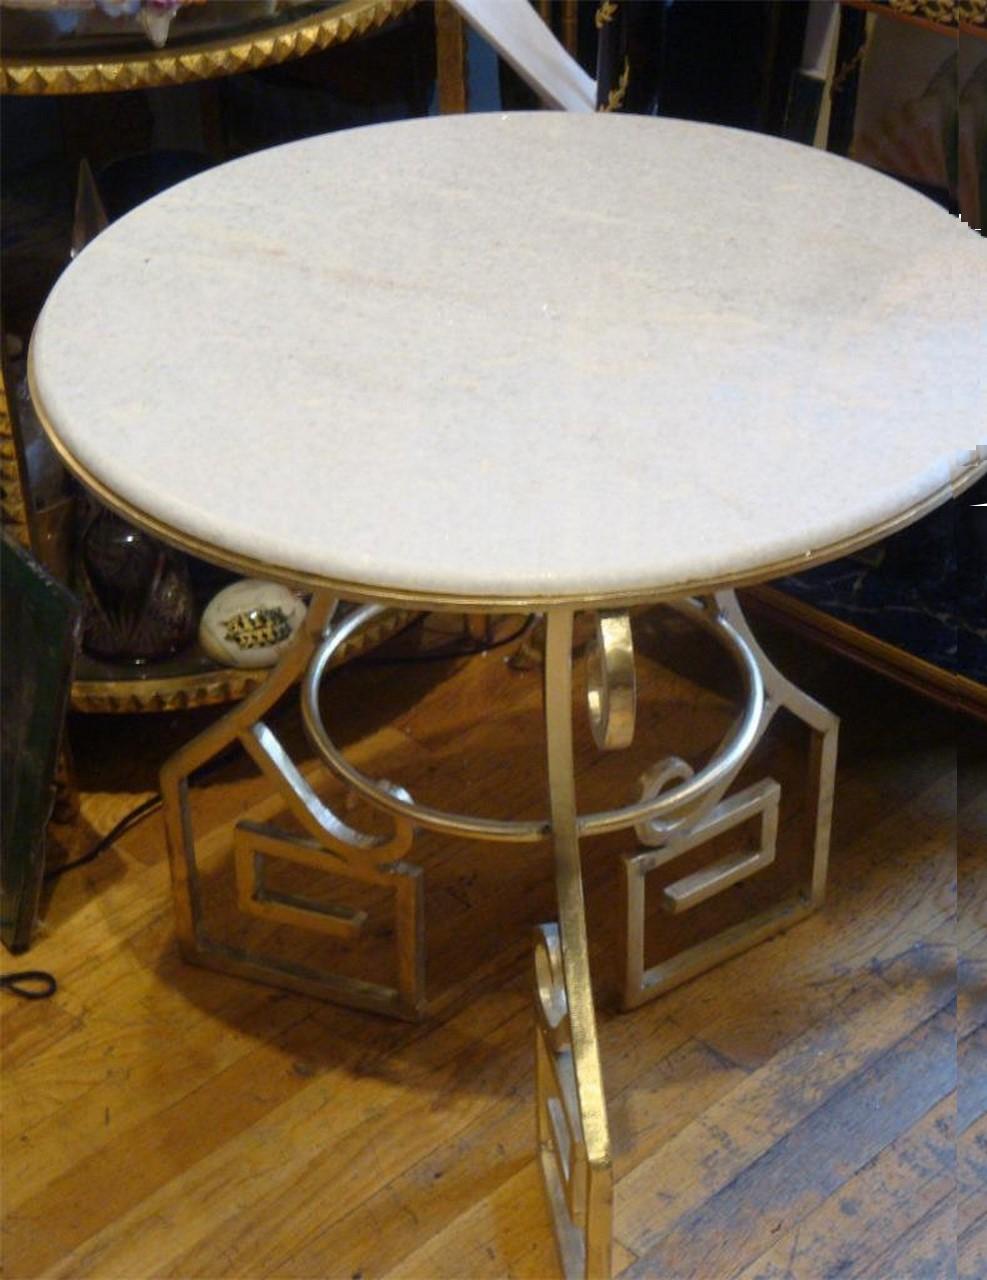 Die folgenden Artikel, die wir anbieten, ist diese seltene Outstanding Important Art Nouveau Stil Weiß Gueridon Marmor Top Side Table. Schöne runde Marmorplatte auf einem vergoldeten, blattvergoldeten Sockel mit Griff. Der Inhalt stammt unter